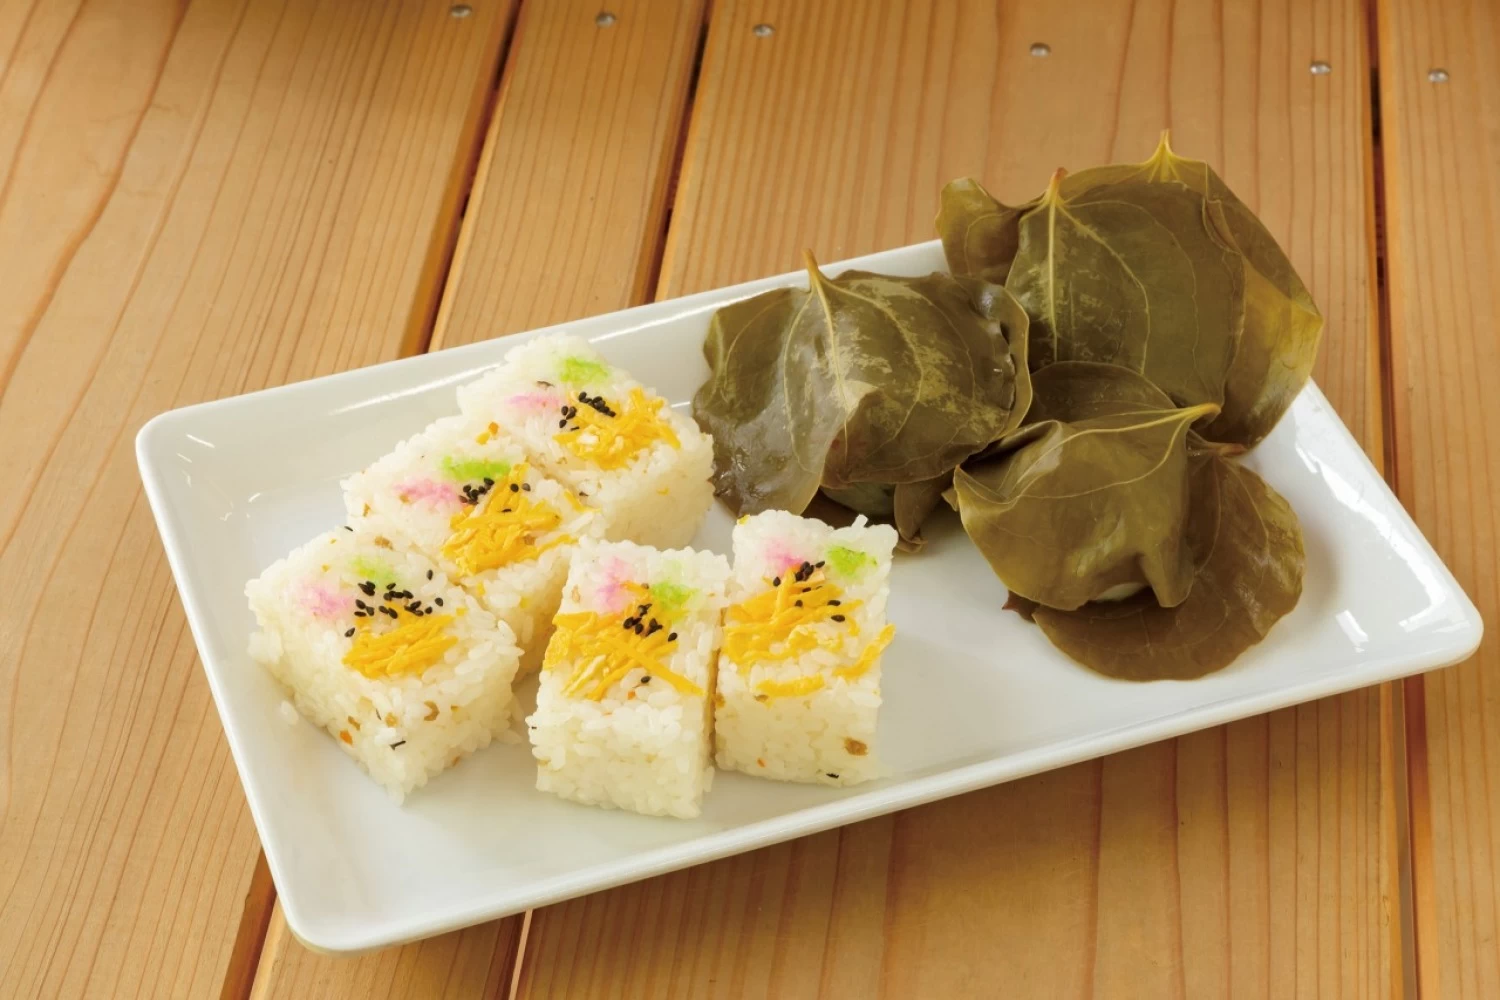 角寿司